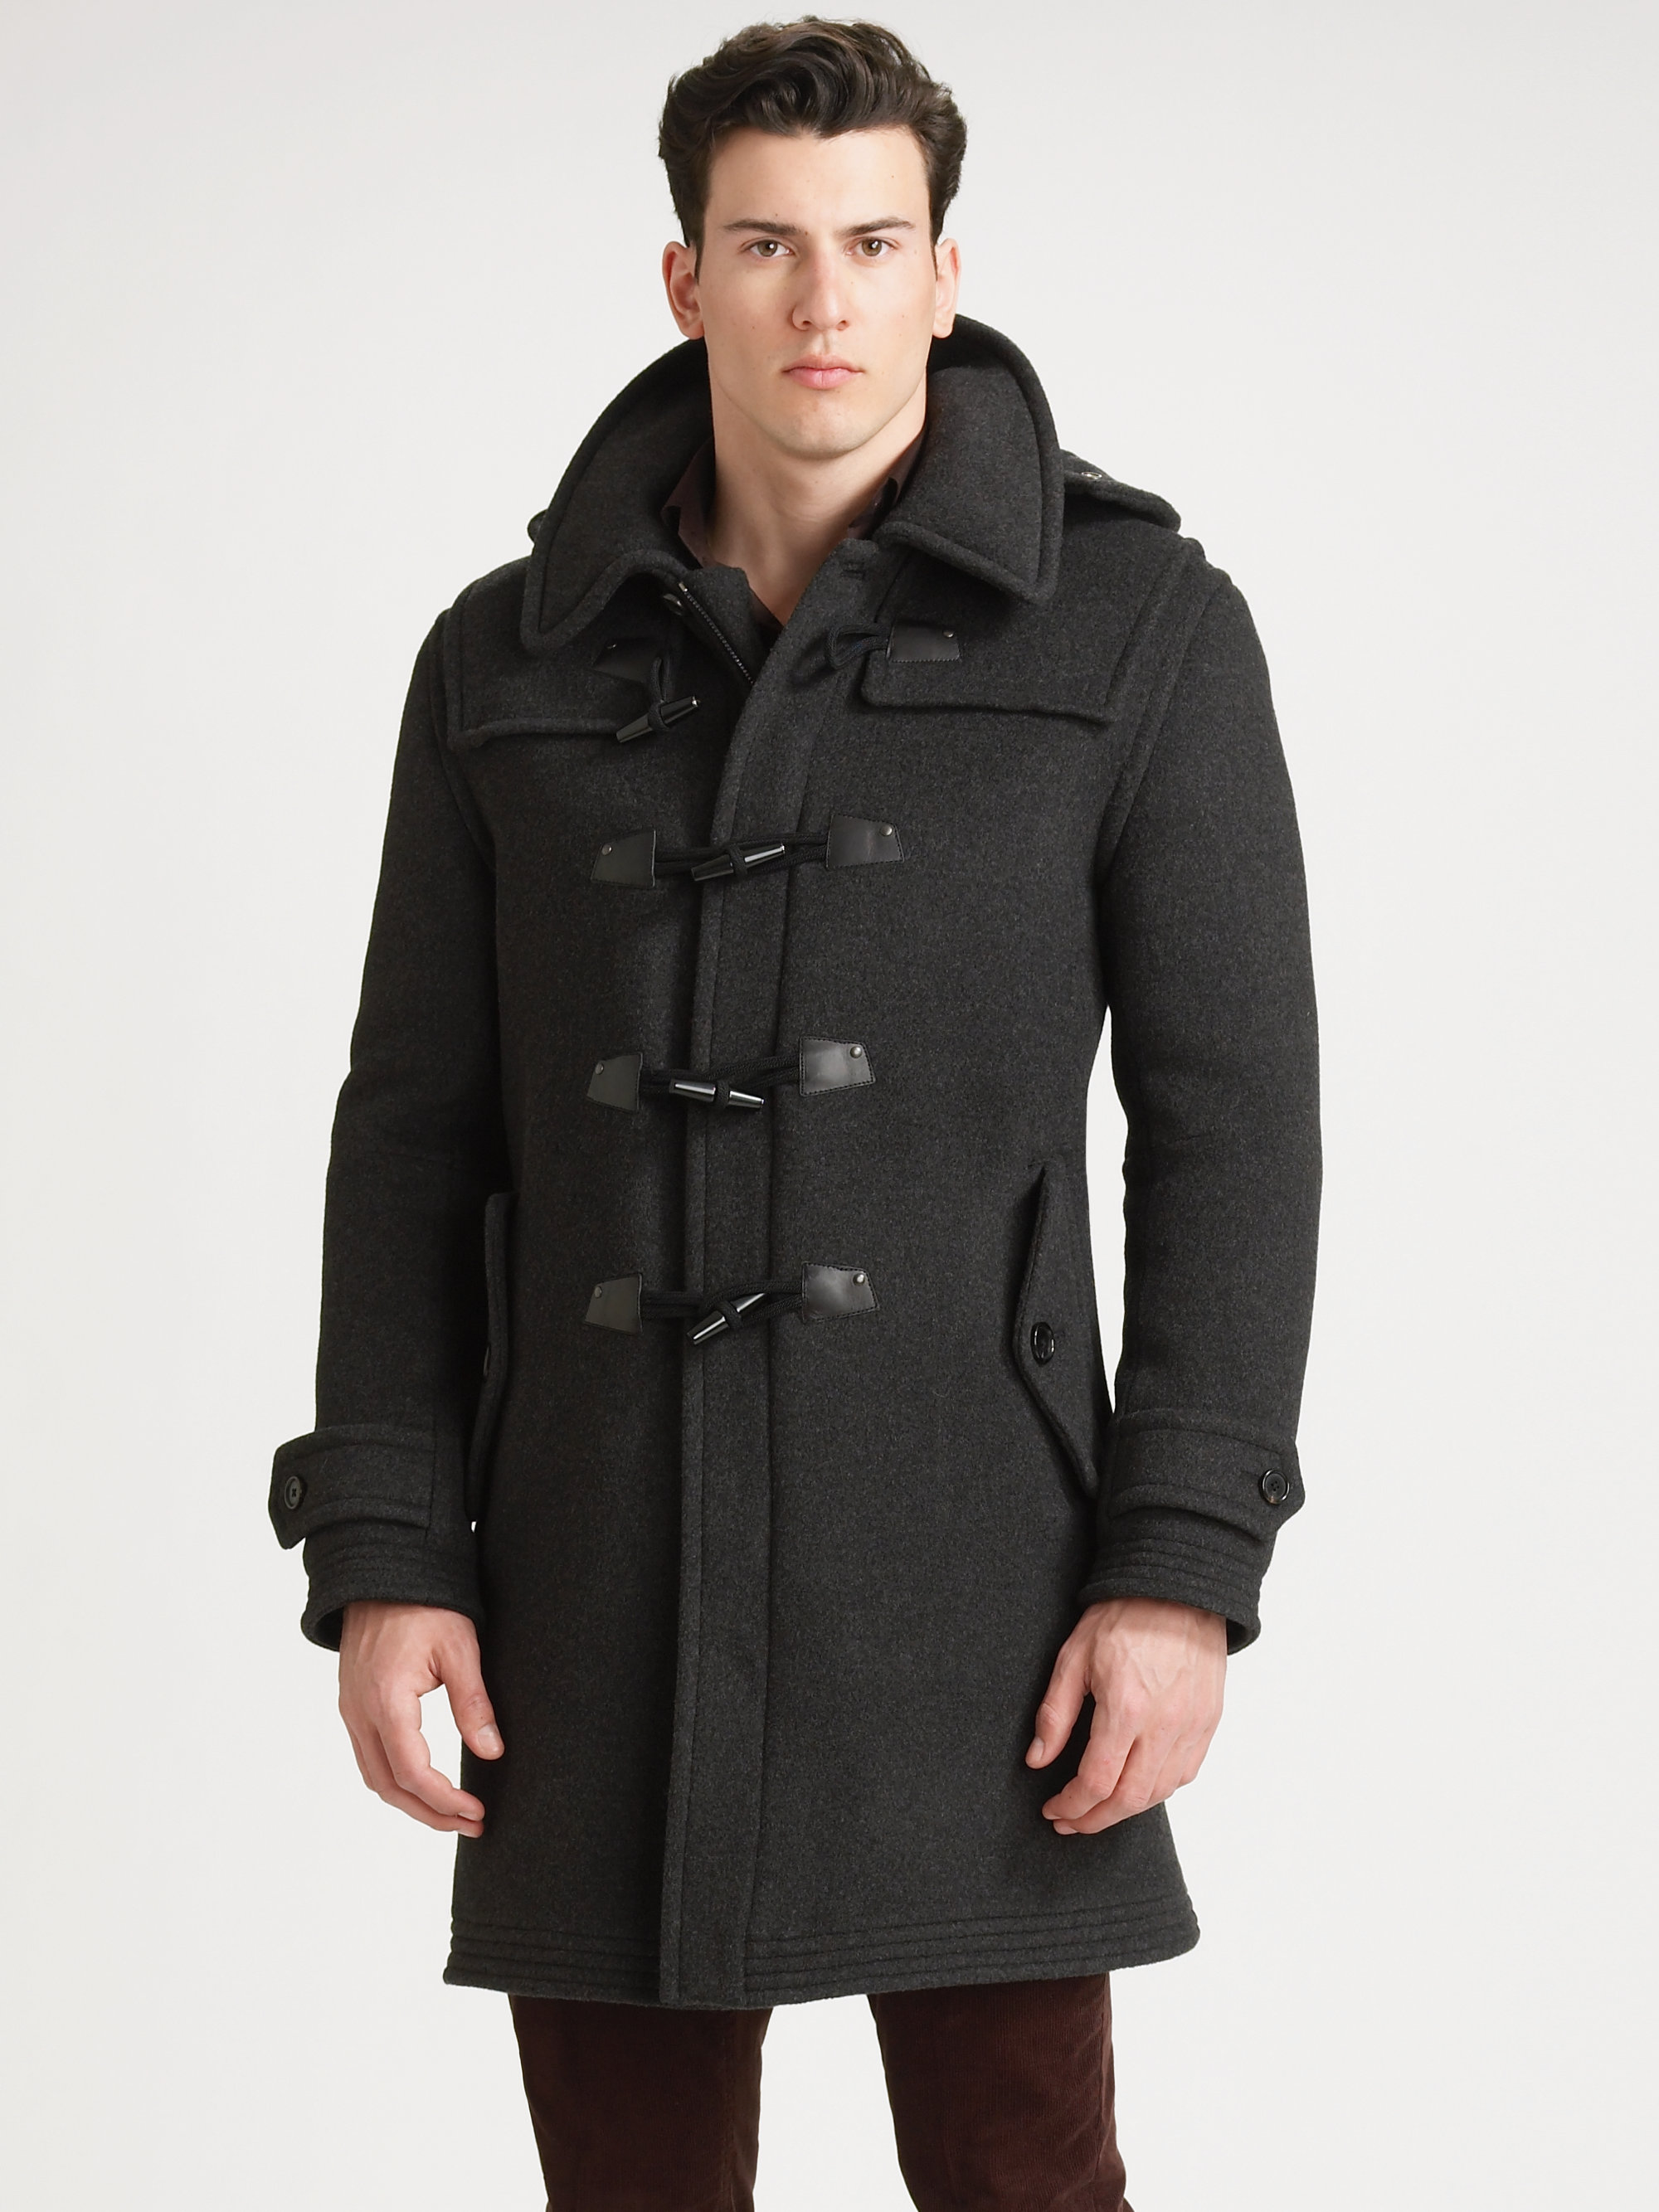 Lyst - Ralph lauren black label Alpine Toggle Coat in Gray for Men